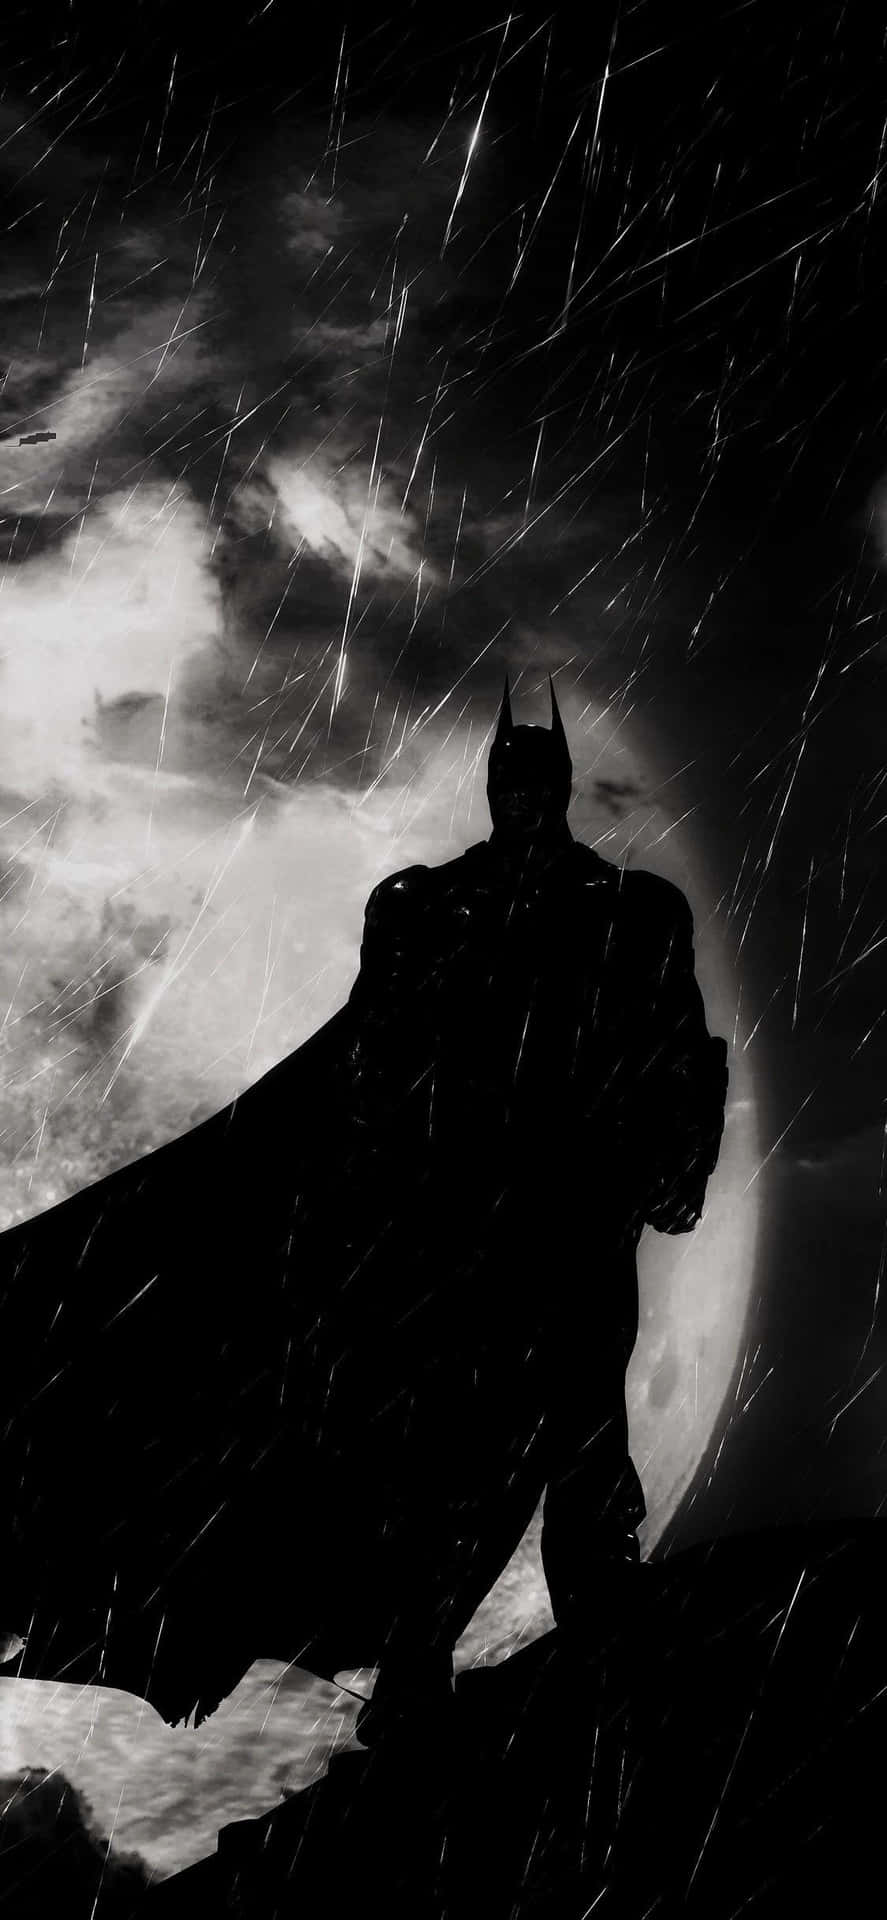 Fåtag På Denna Fantastiska Batman-bakgrundsbild Till Din Iphone. Wallpaper